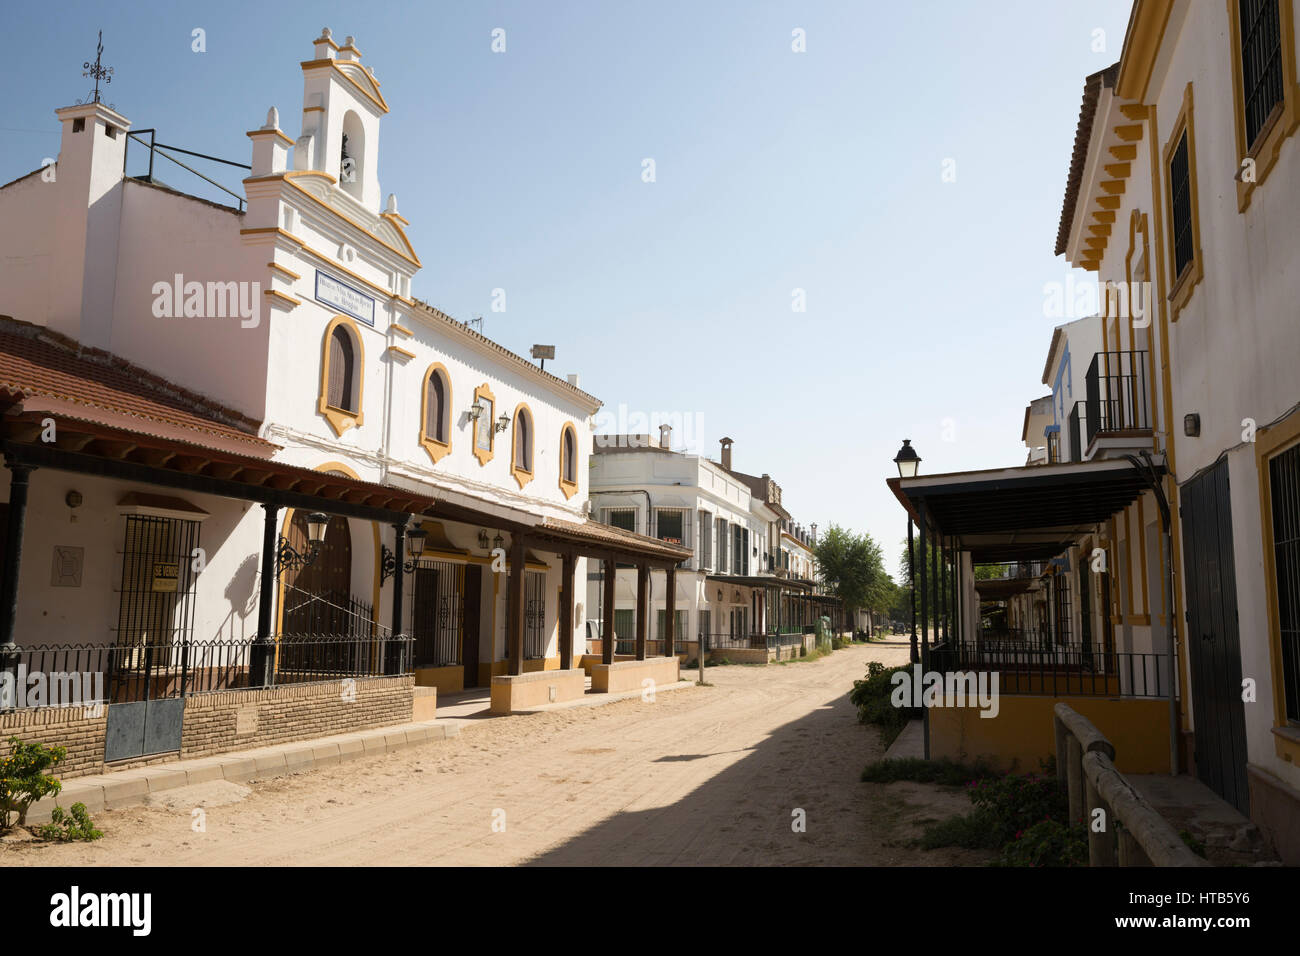 Las calles de arena y la hermandad de las viviendas, El Rocío, la provincia de Huelva, Andalucía, España, Europa Foto de stock